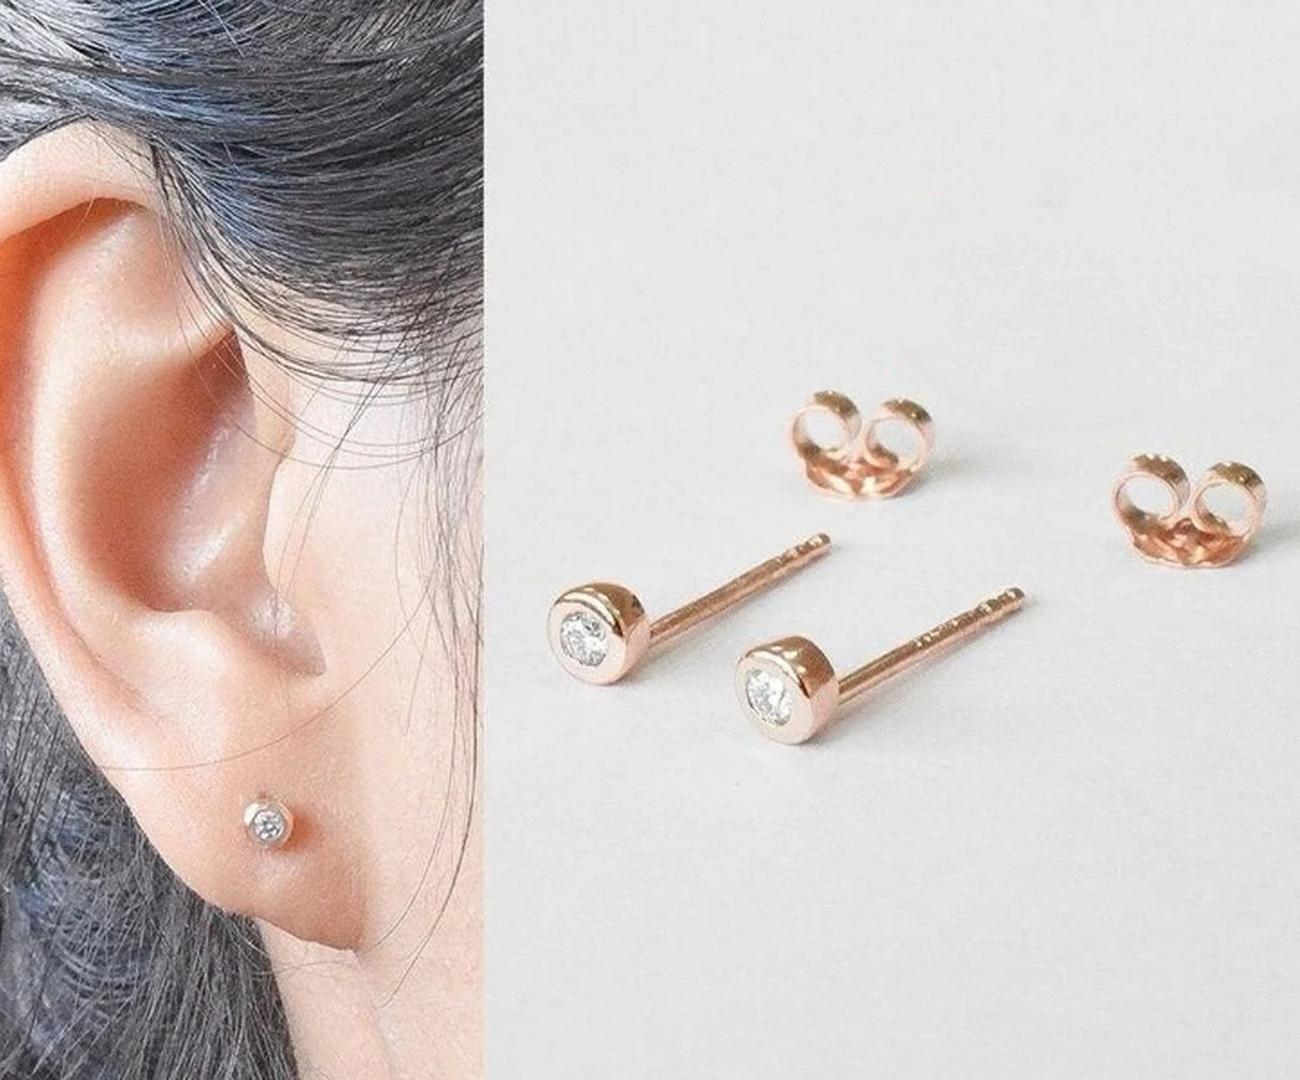 3.5 mm earrings